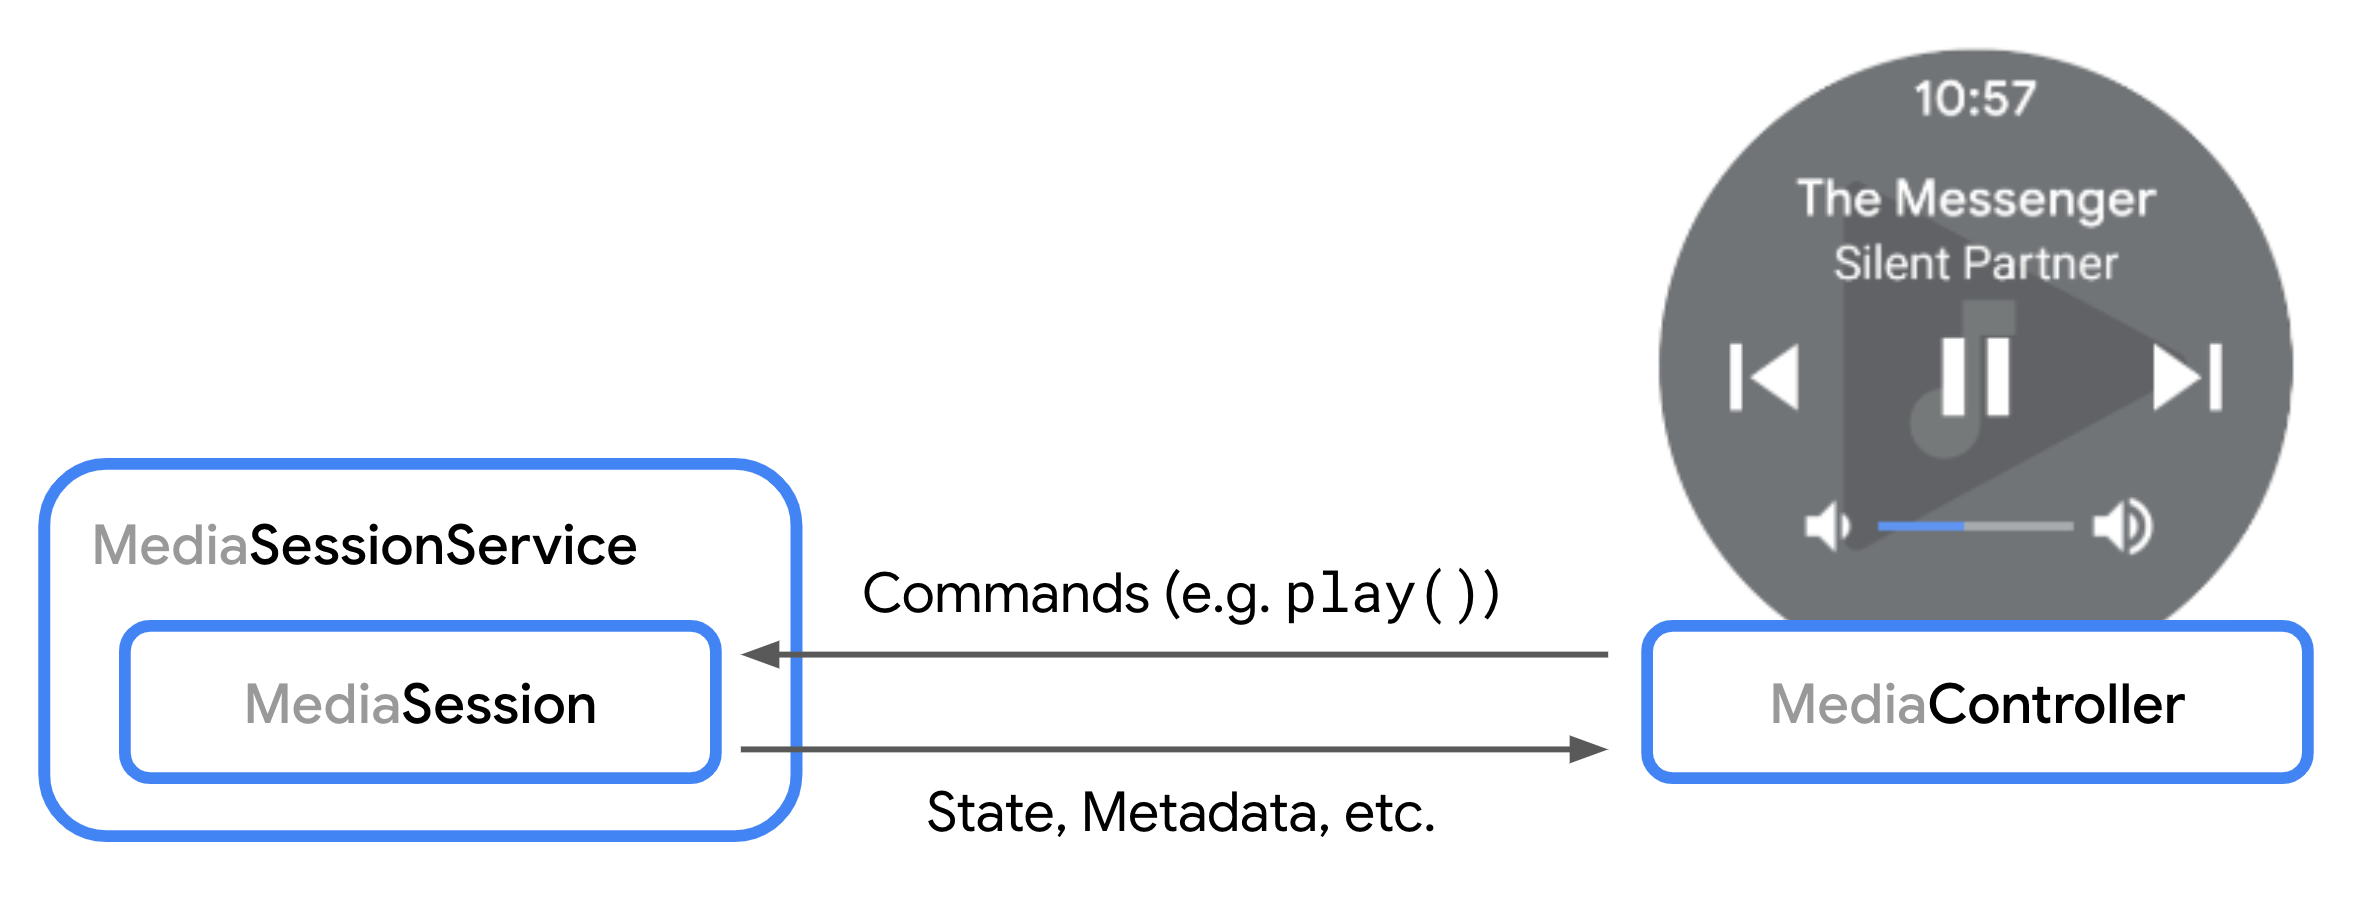 نموداری که تعامل بین MediaSession و MediaController را نشان می دهد.